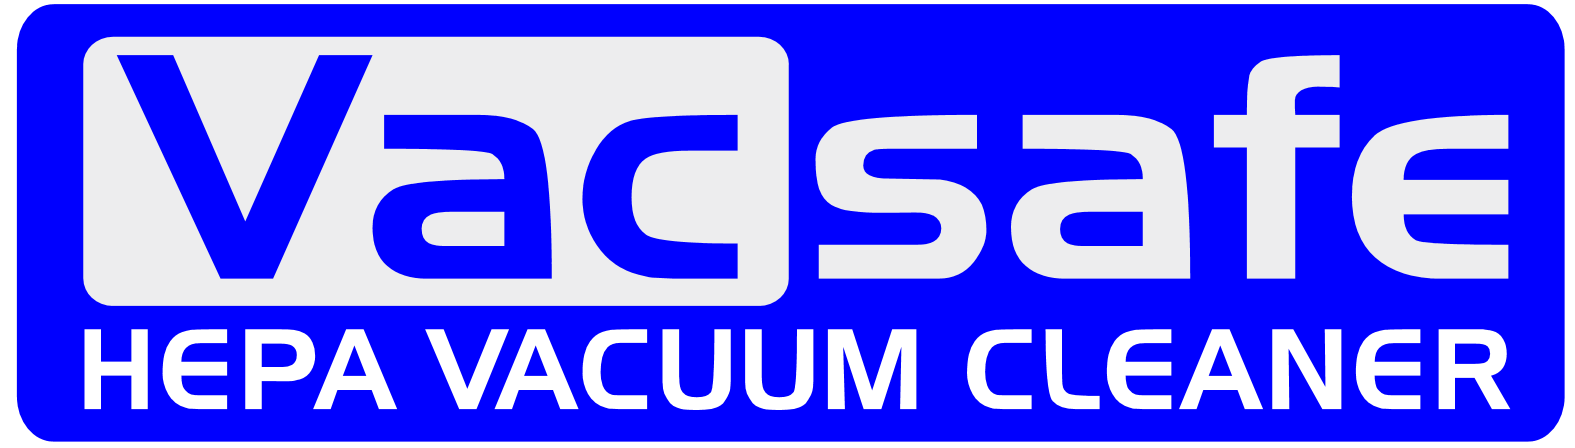 Vac-Safe HEPA Industrial Vacuum Cleaners